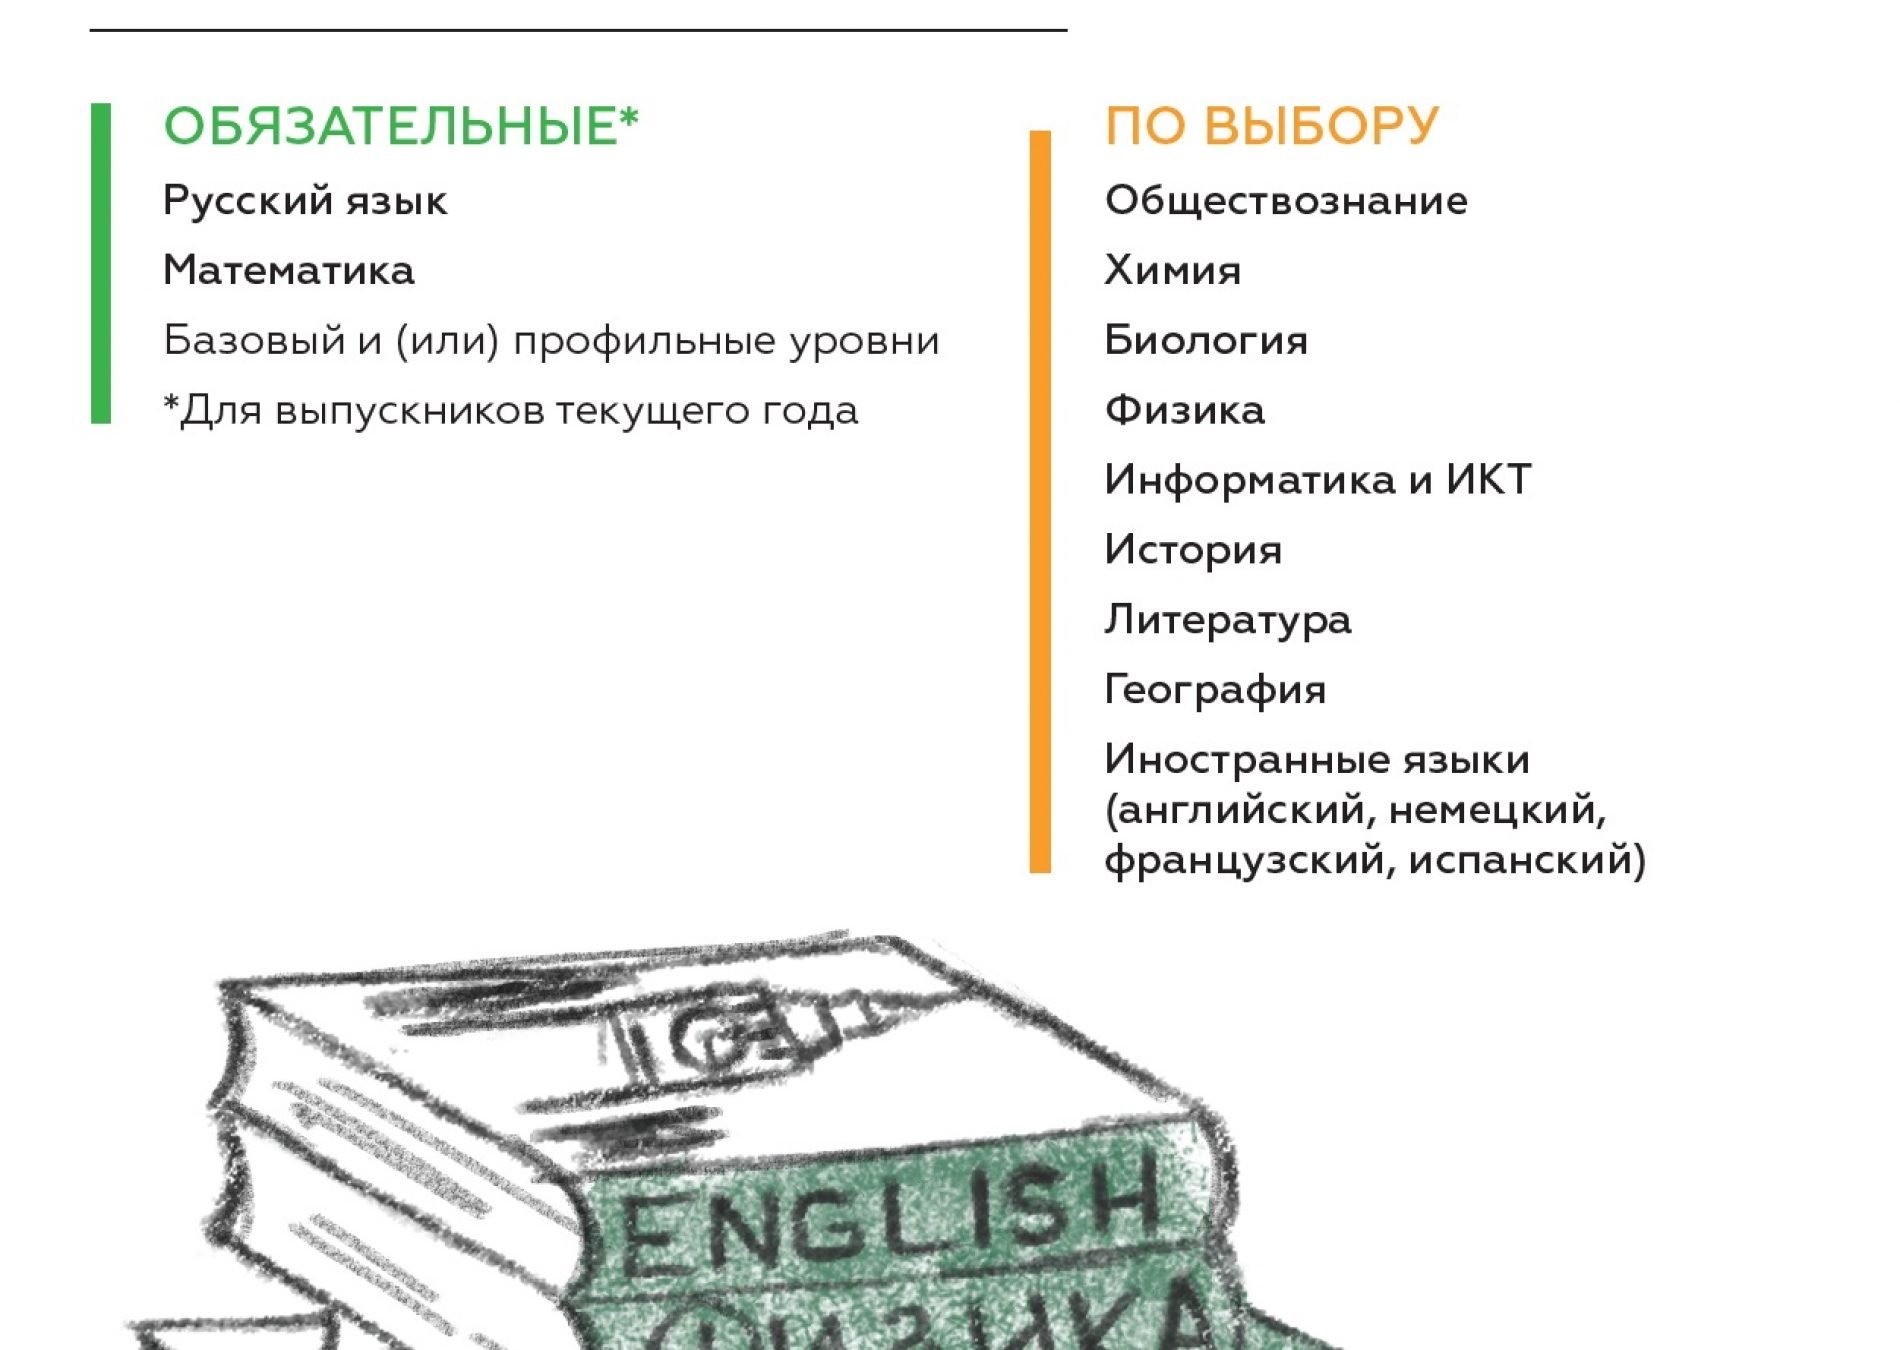 Рособрнадзор подготовил информационные плакаты ЕГЭ-2018 для участников экзаменов